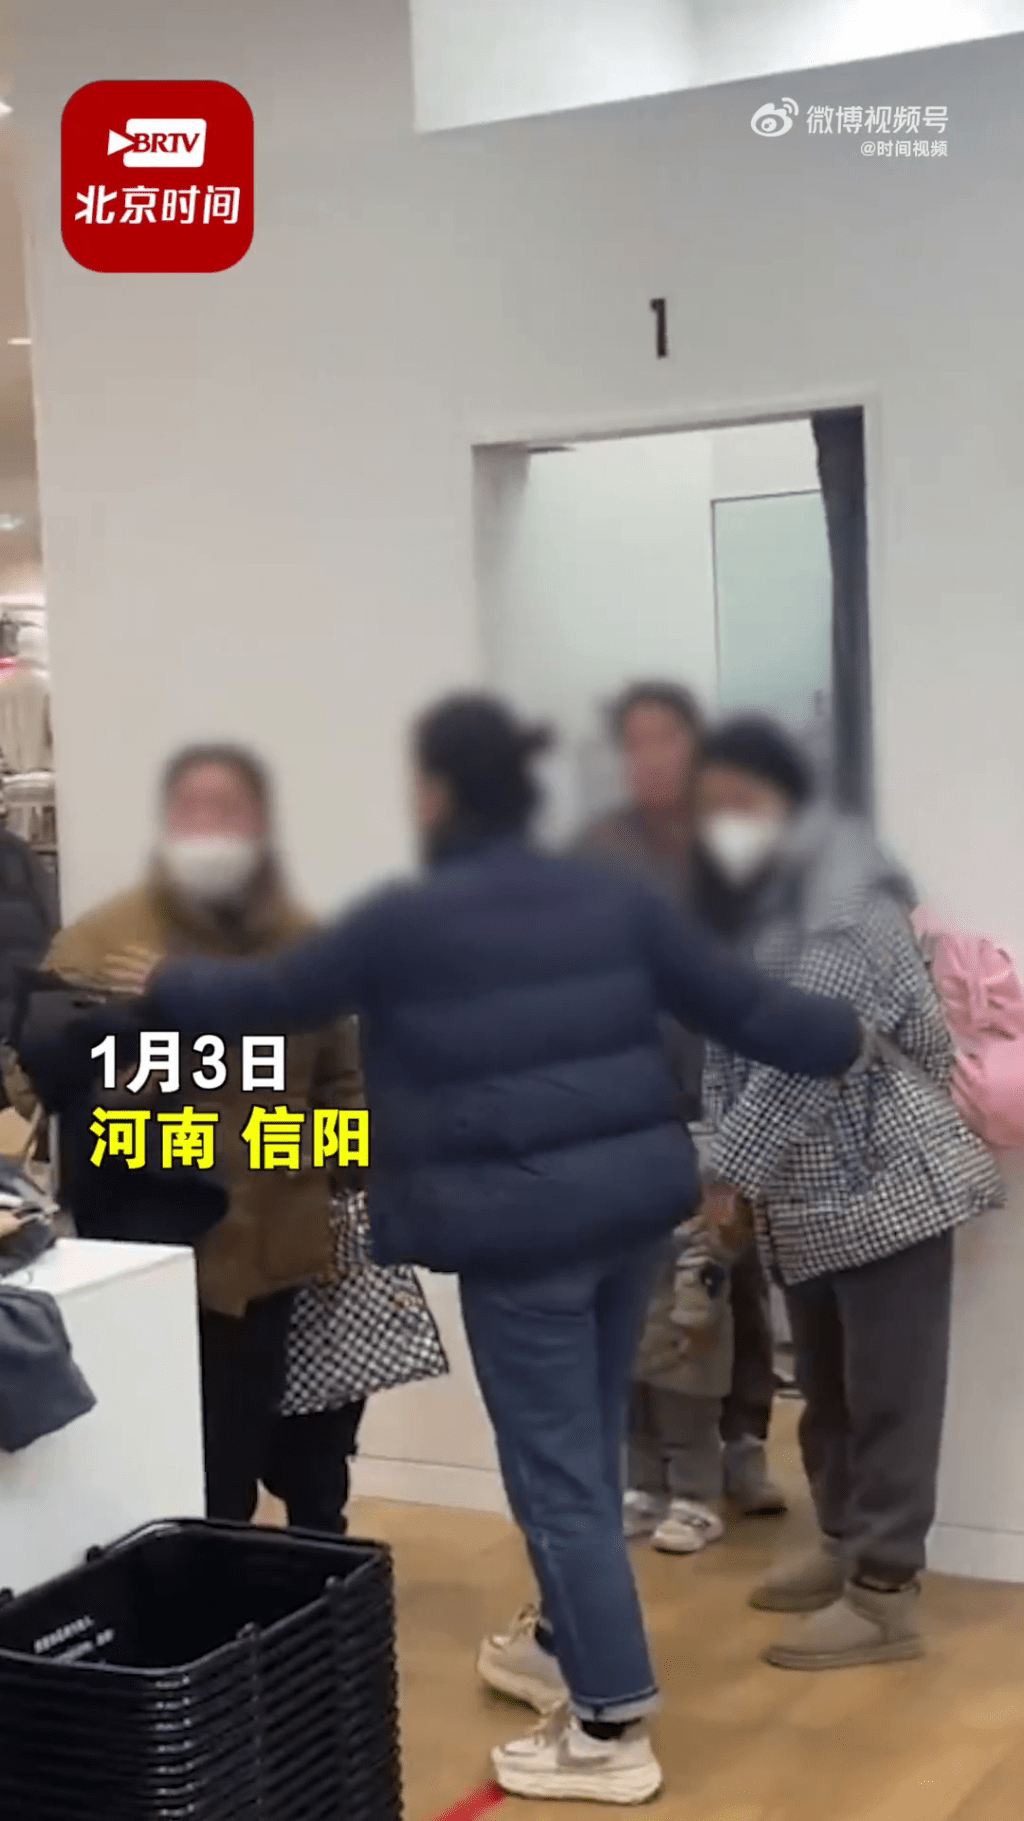 劝架的女店员试图拦著两名家长阻止冲突发生。